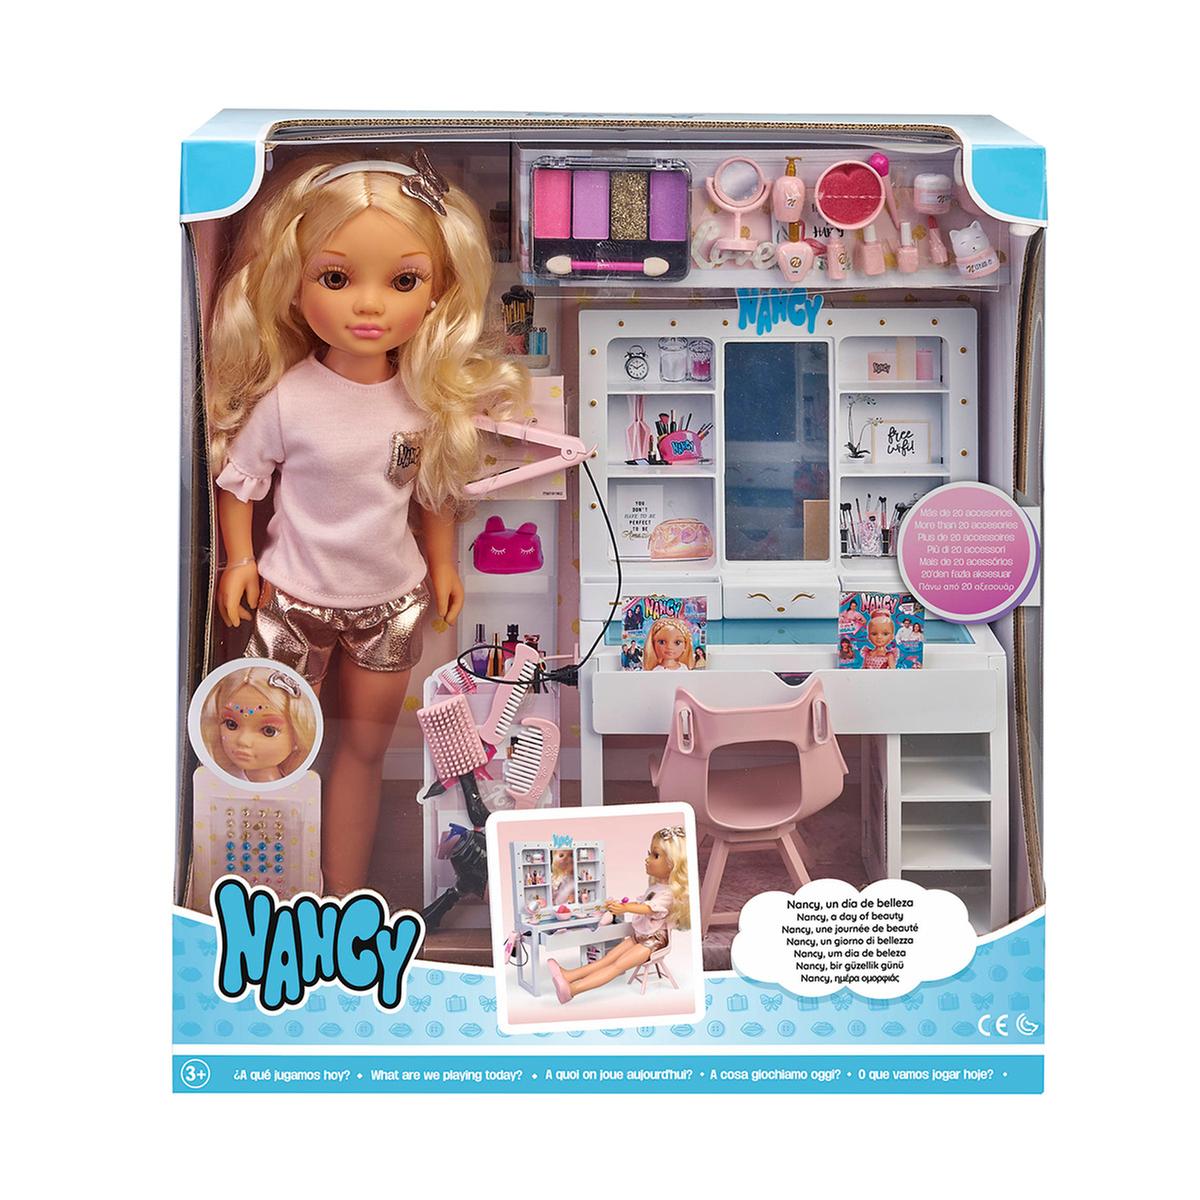 Nancy - Um Dia de Beleza | Nancy | Loja de brinquedos e videojogos Online  Toysrus